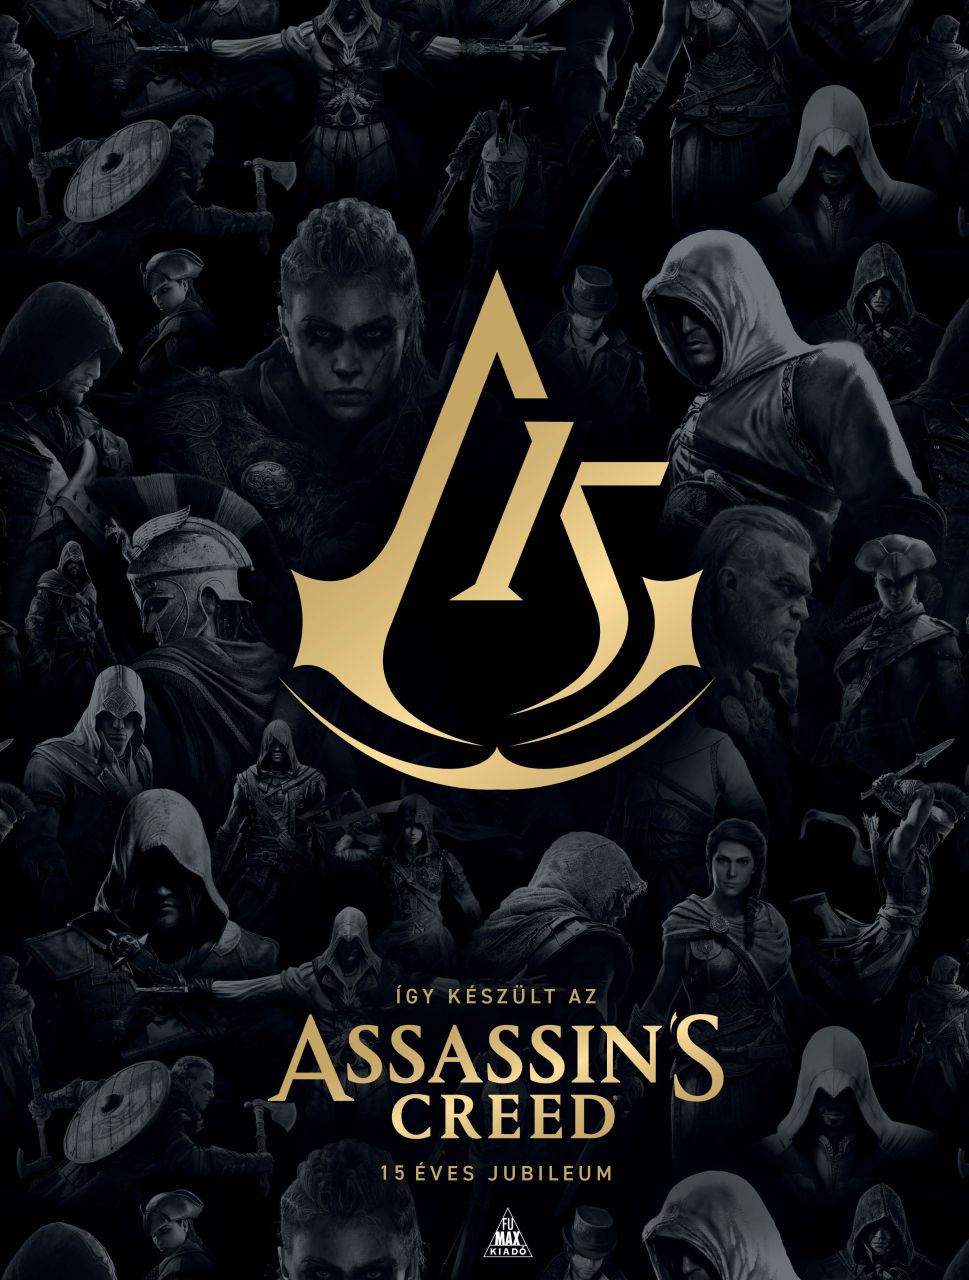 Így készült az Assassin's Creed - 15 éves jubileumi keménytáblás album előrendelés!